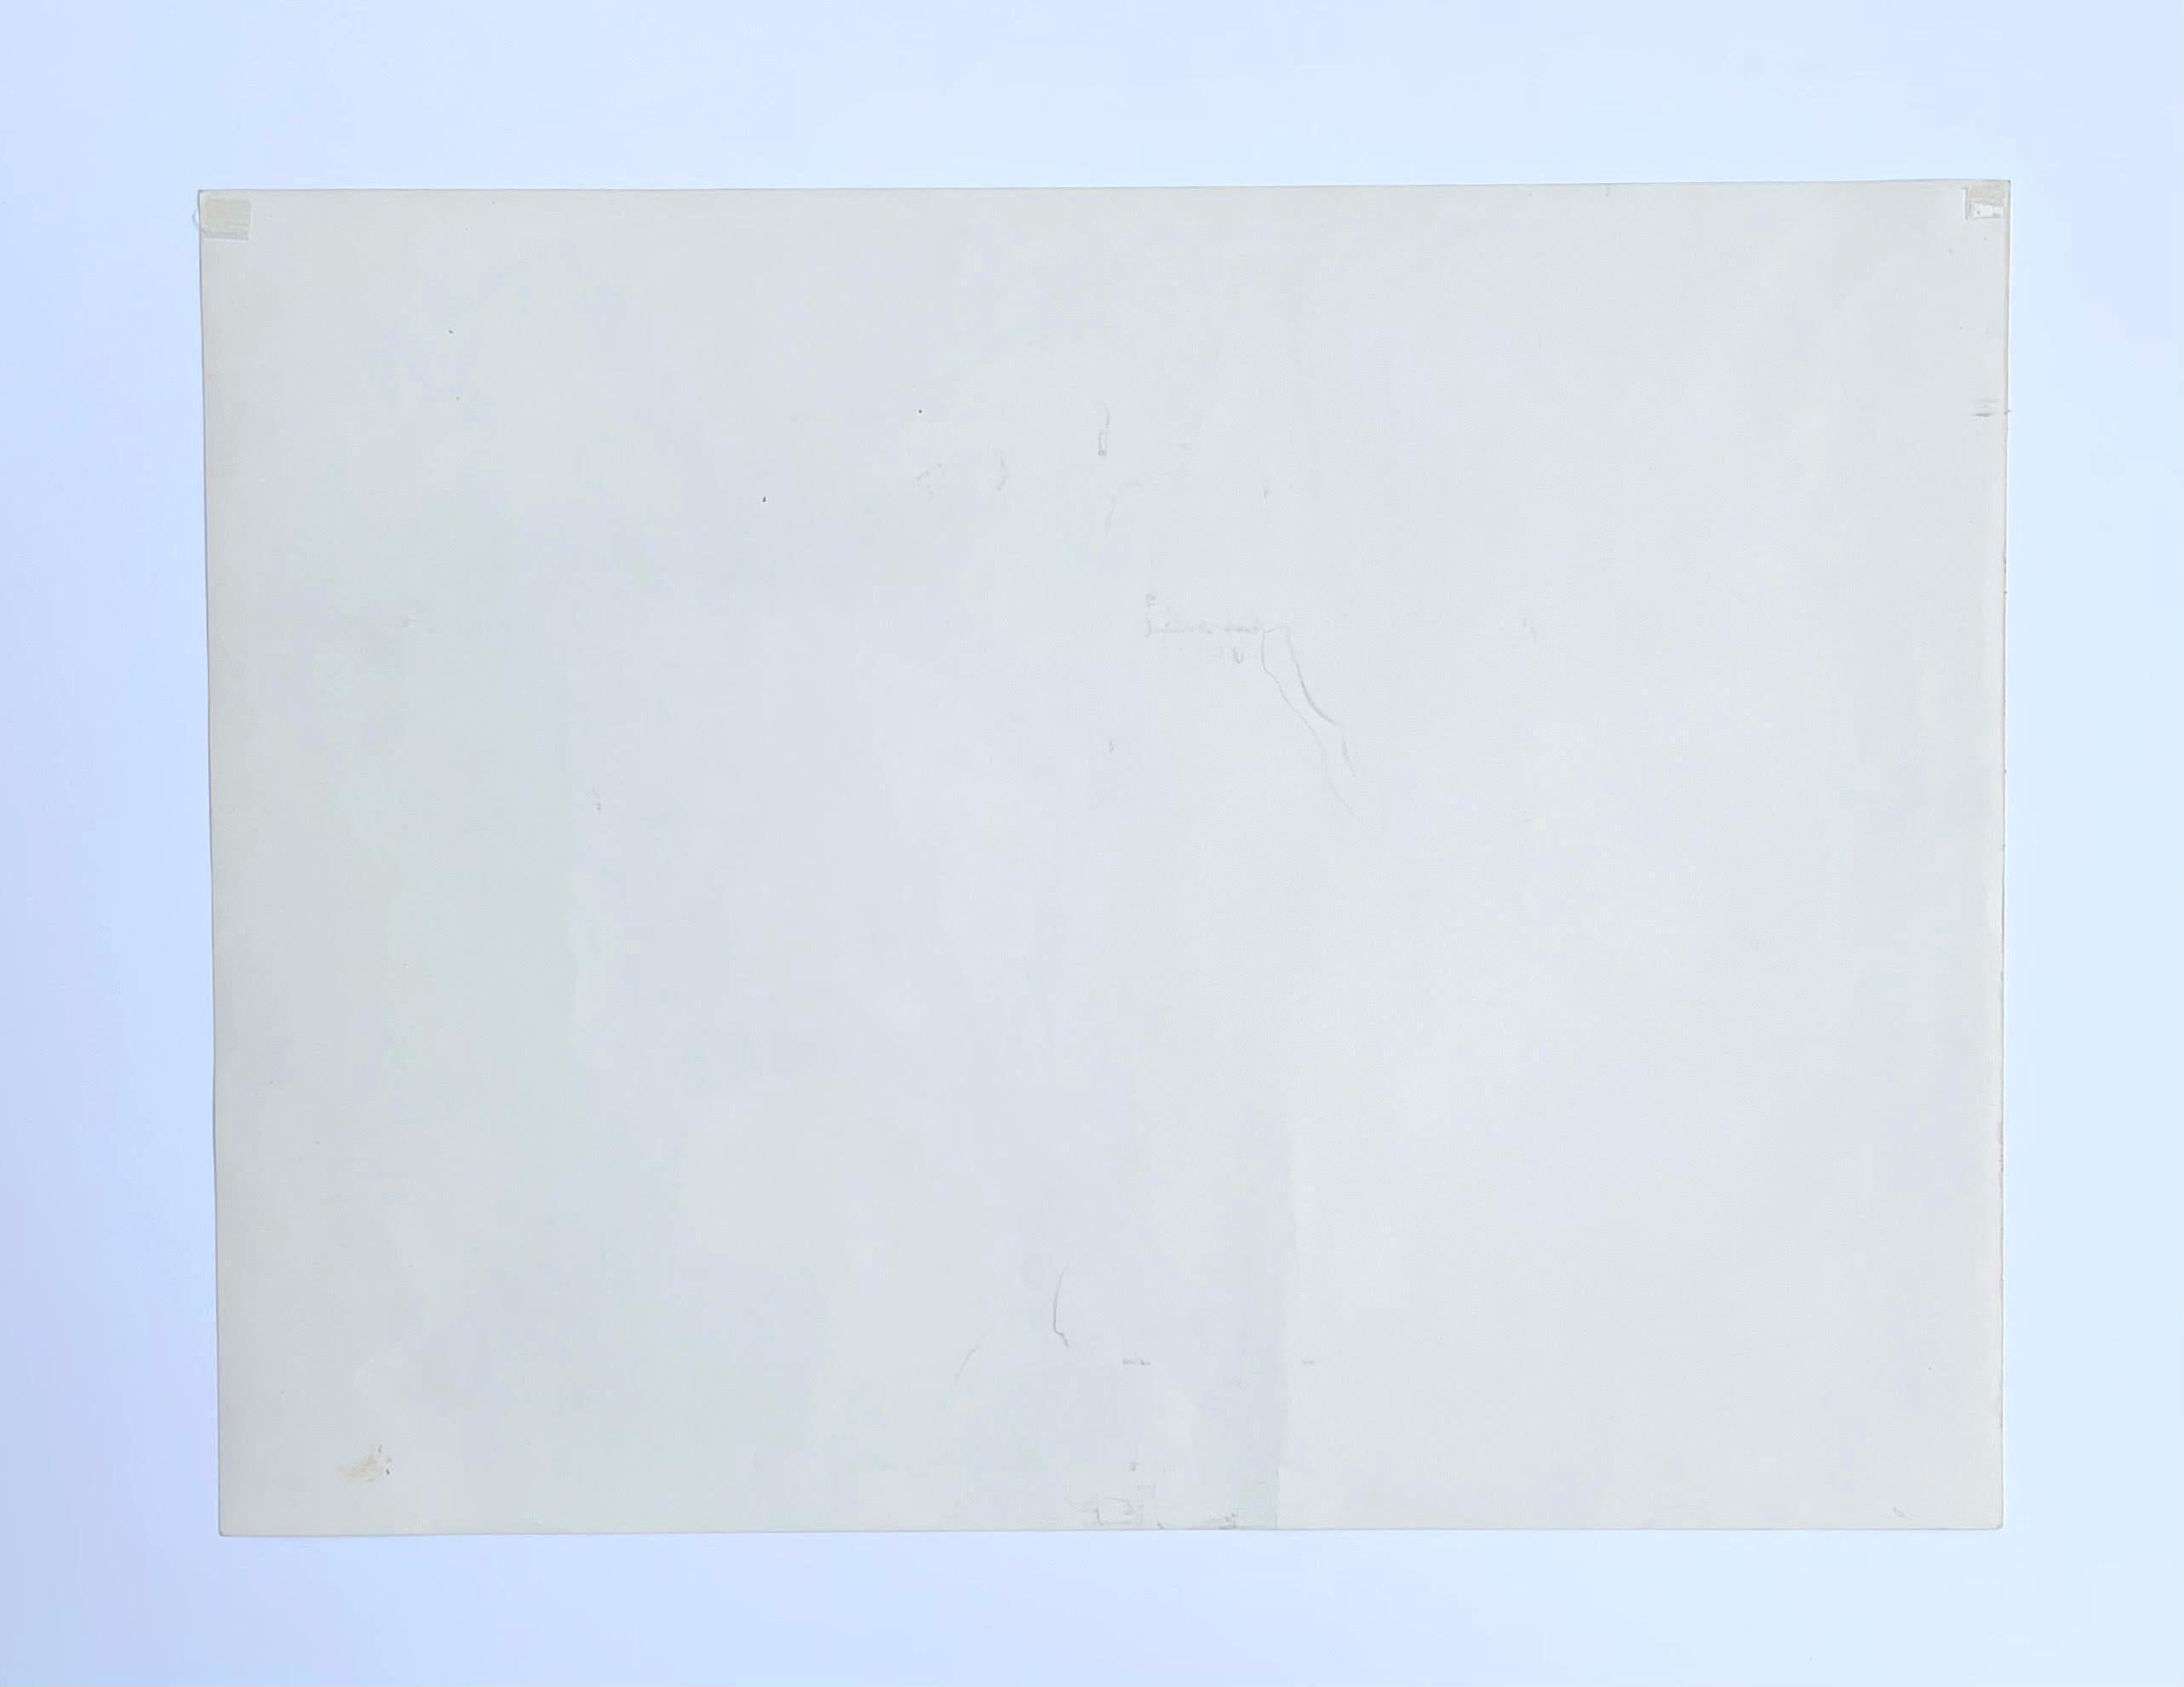 Mark di Suvero
Studie für Atman (zweimal handsigniert), ca. 1978
Markerwaschung auf Papier (zweimal von Mark di Suvero handsigniert)
Zweimal signiert von Mark di Suvero vorne unten in der Mitte und nochmals rechts
15 × 20 Zoll
Ungerahmt
Diese